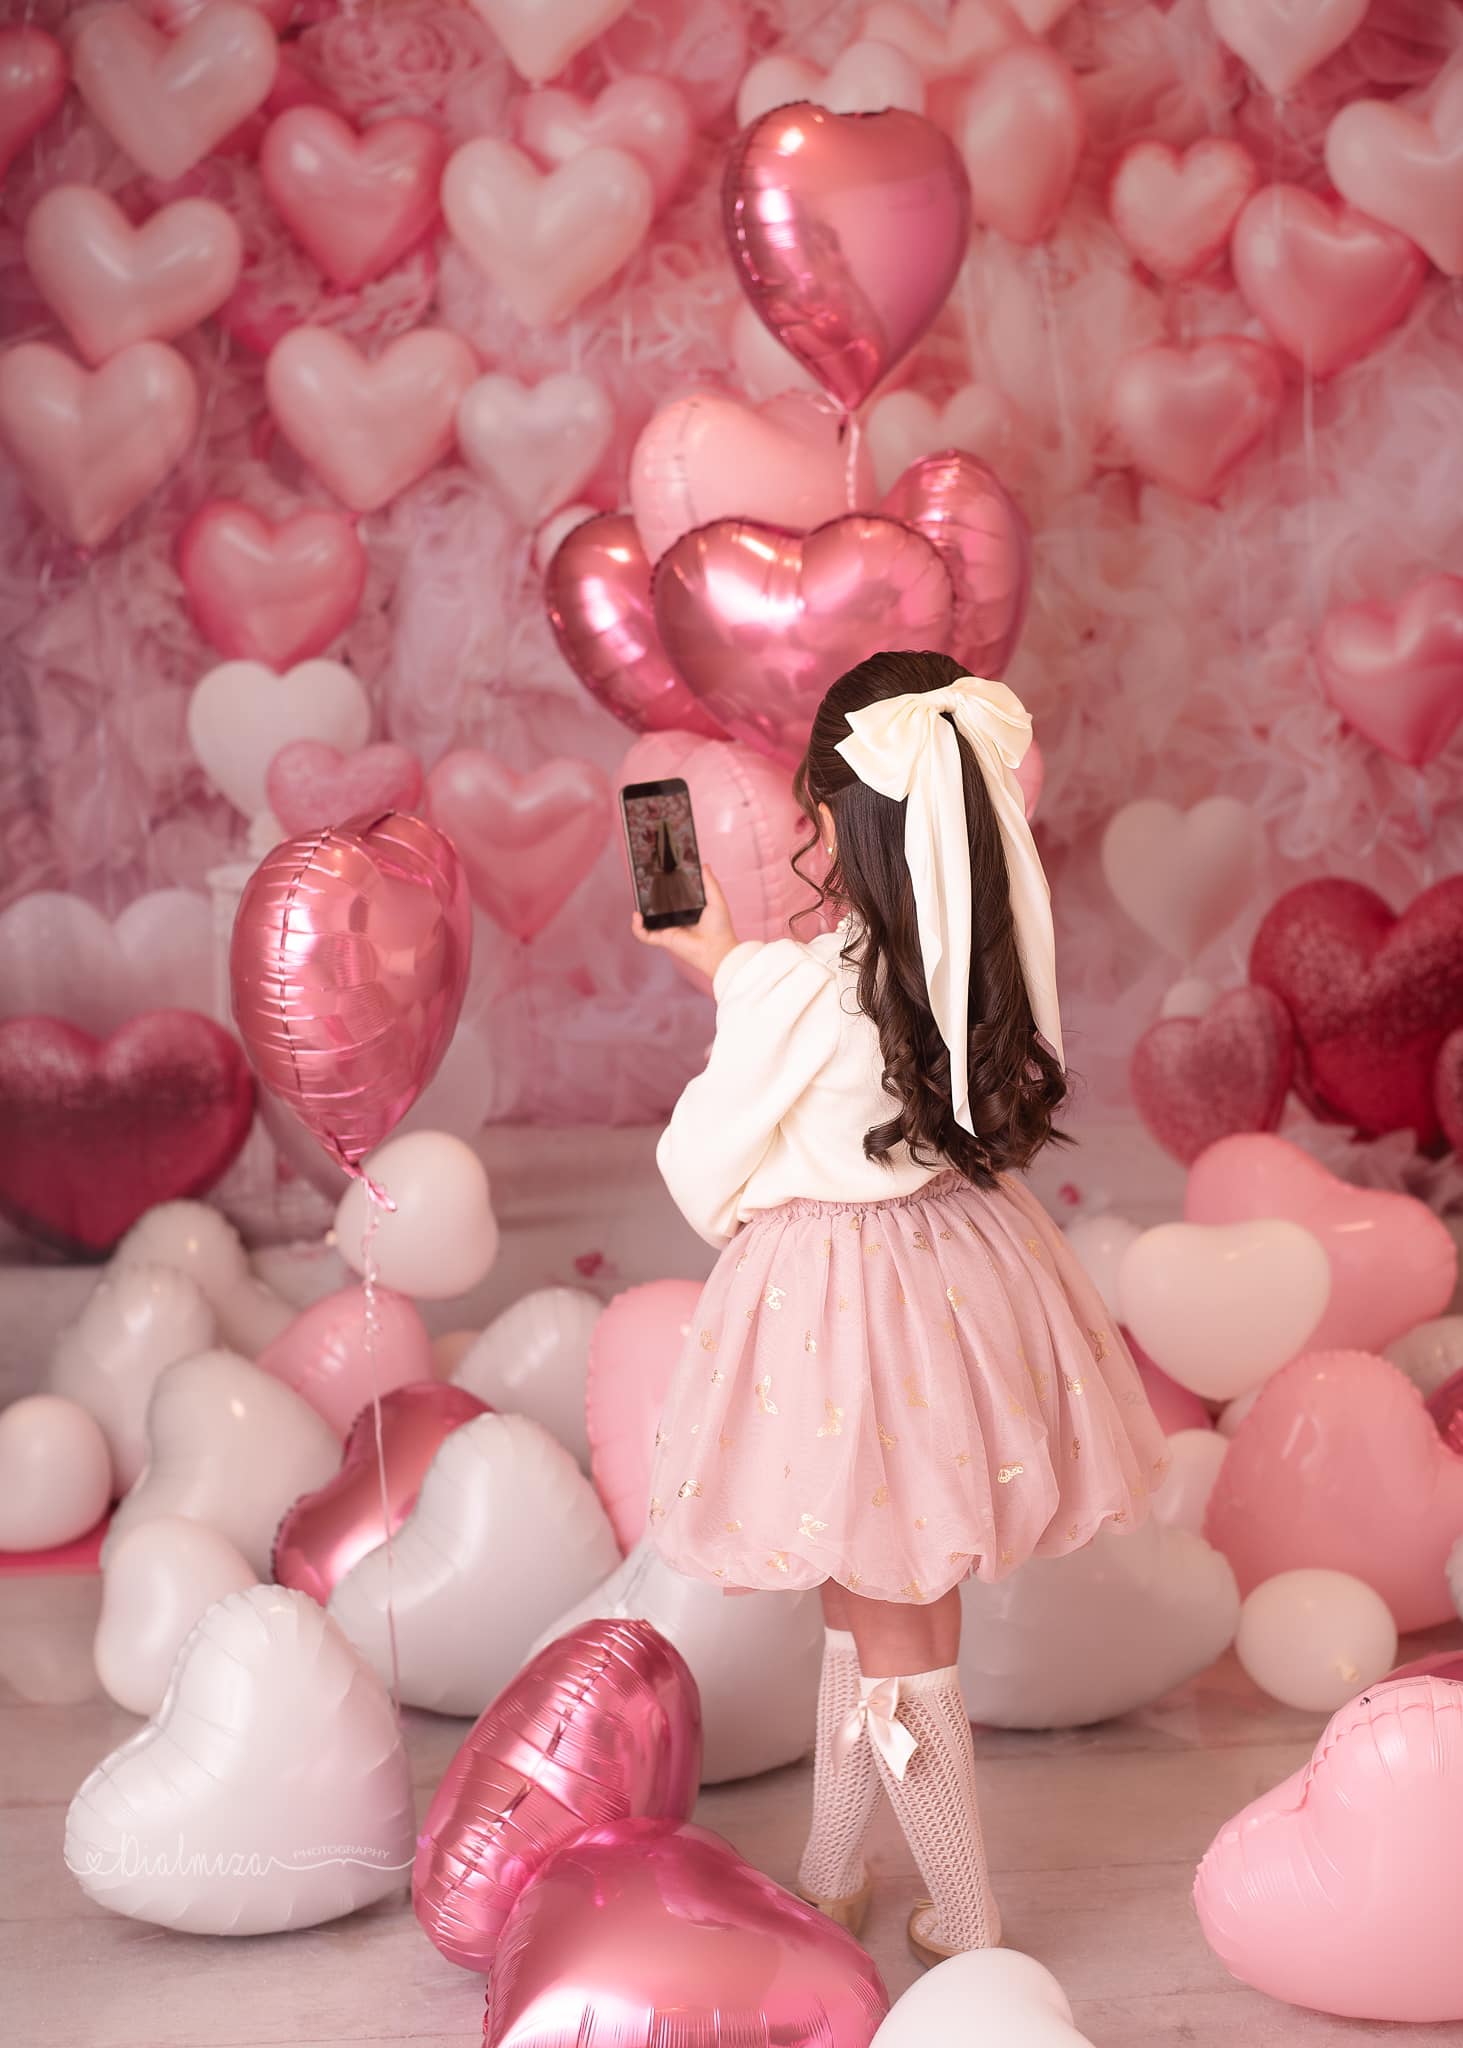 Kate Saint Valentin Rose Ballons Coeur Romantique Toile de fond conçue par Emetselch